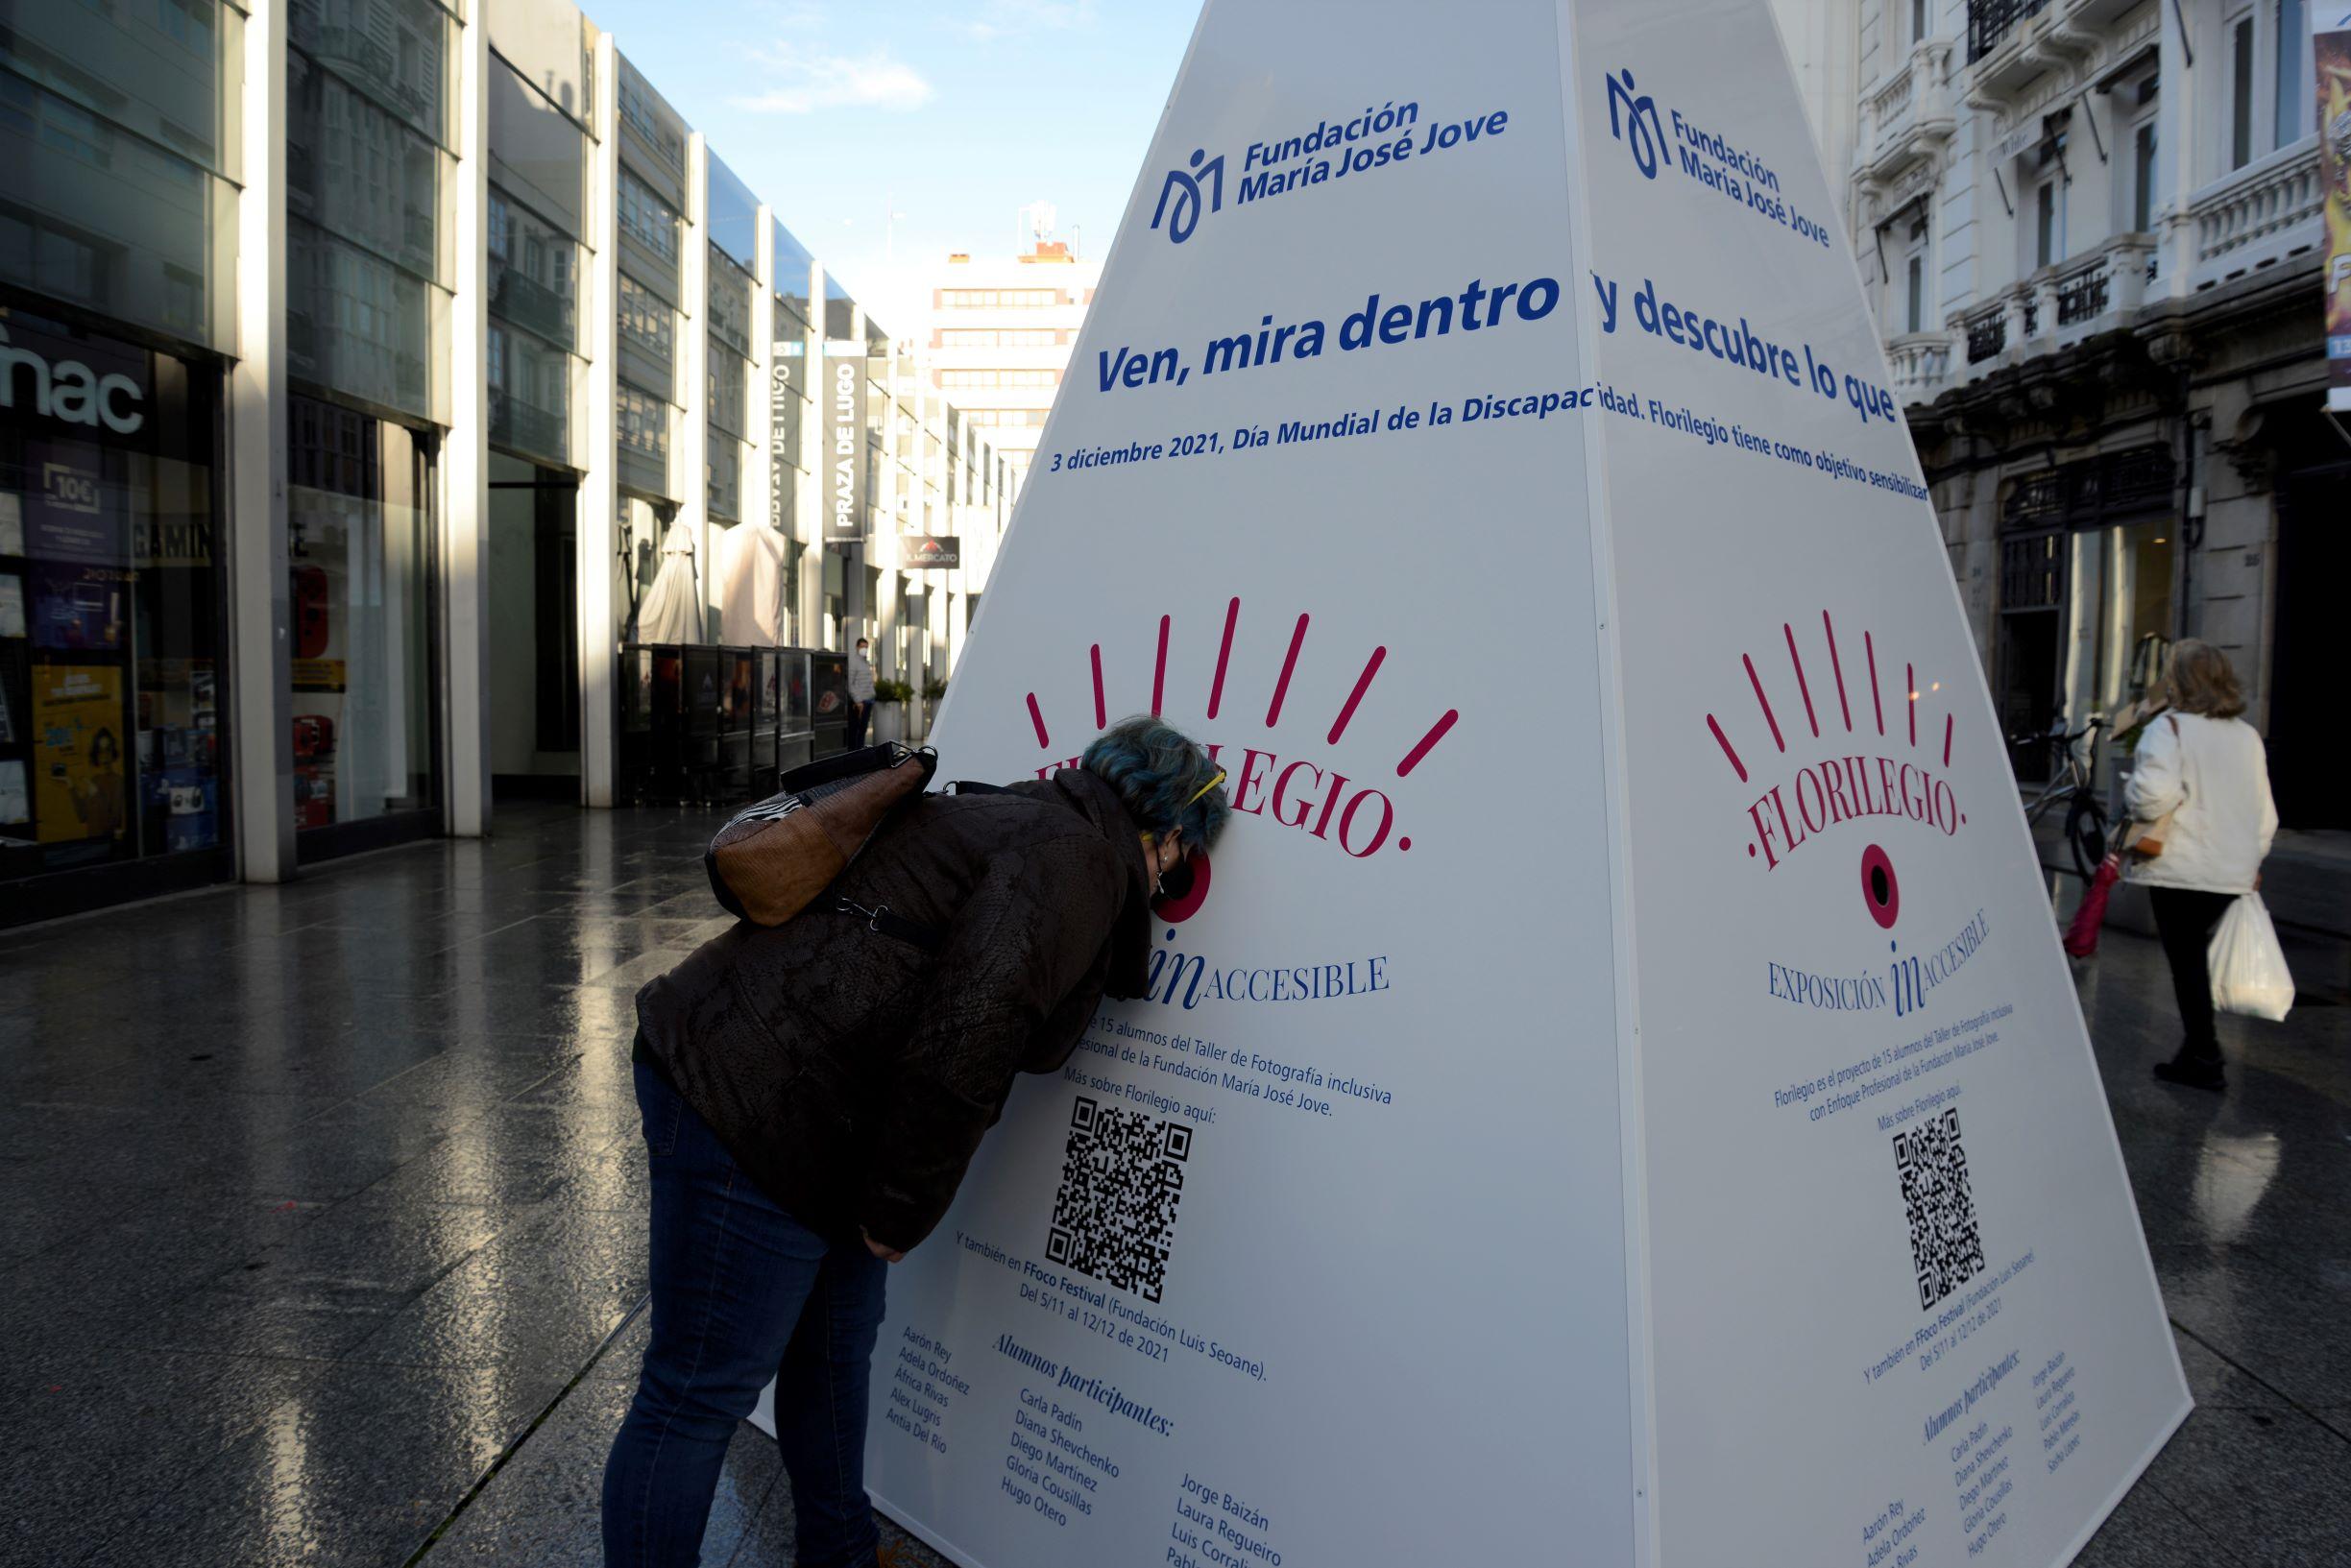 La pirámide de la Exposición inAccesible colocada en la plaza de Lugo de A Coruña (FMJJ).